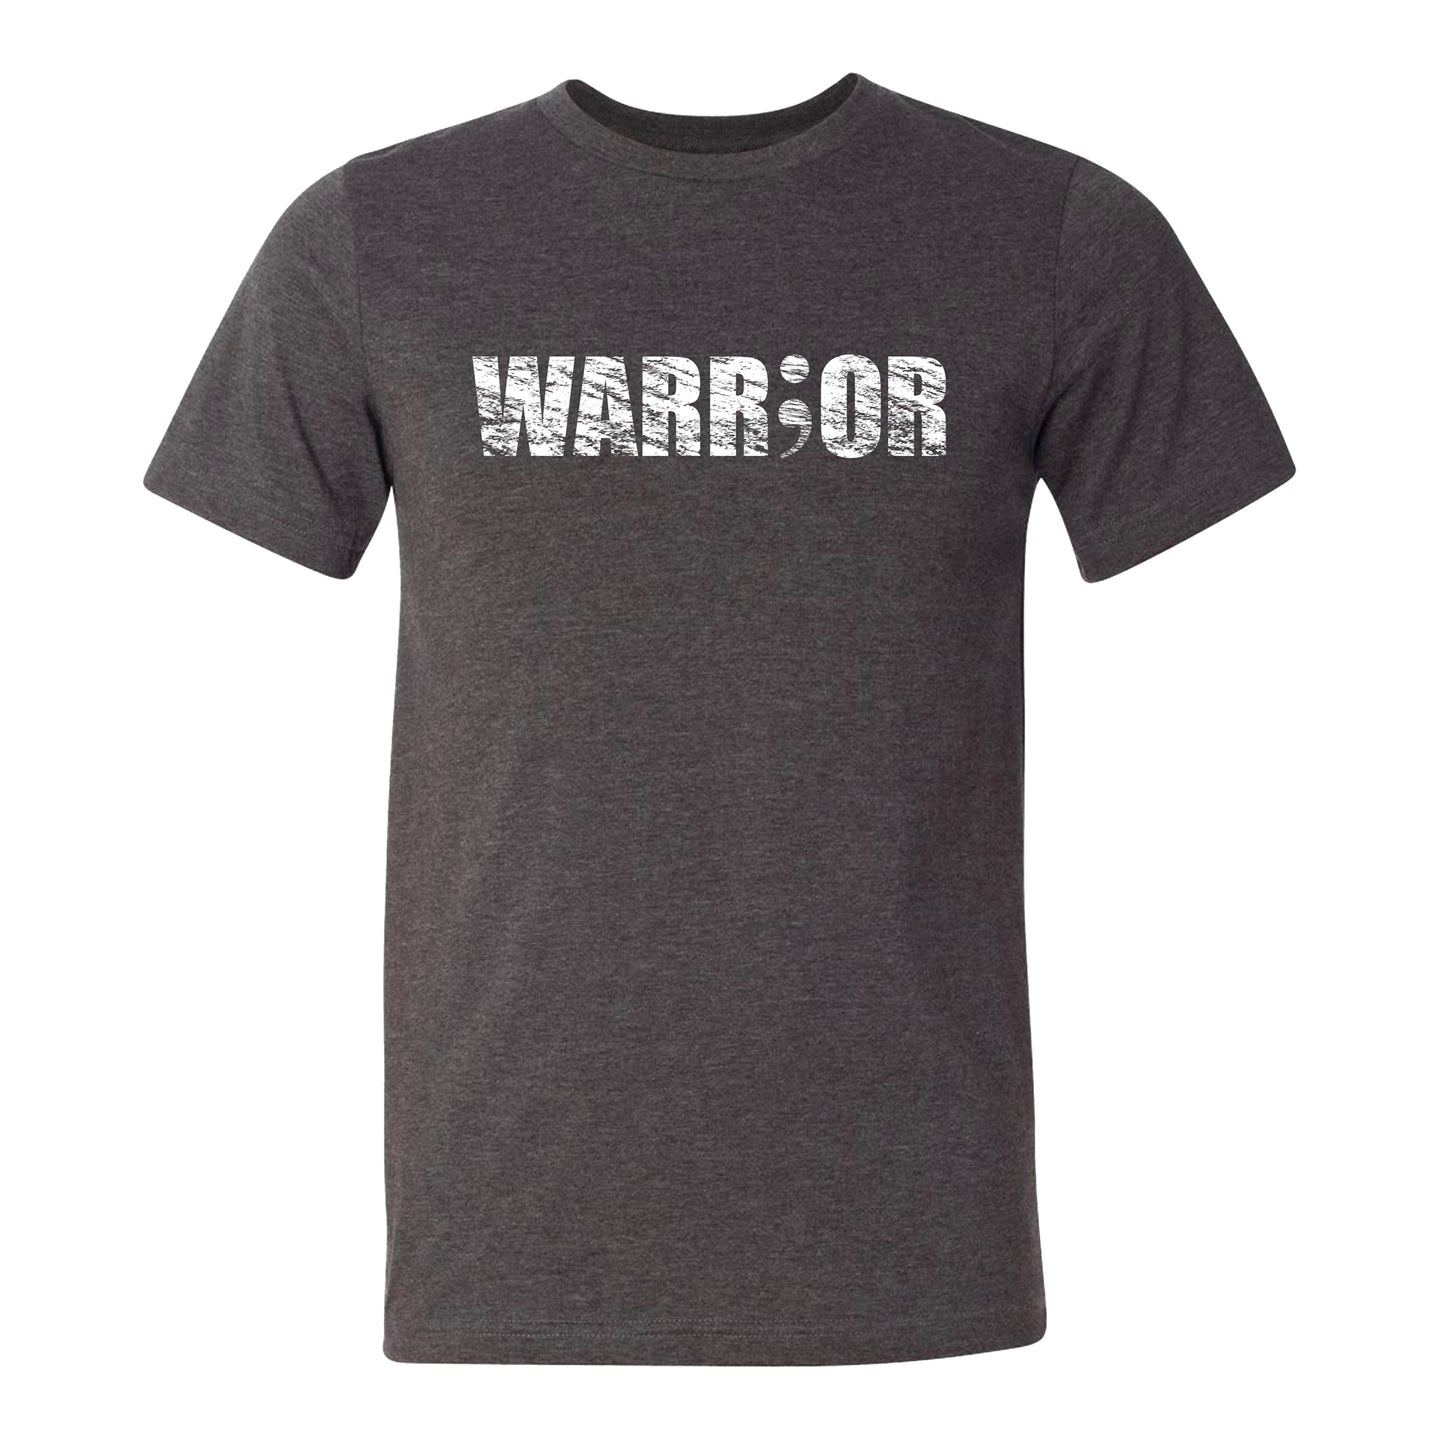 I’m a Warrior T-Shirt